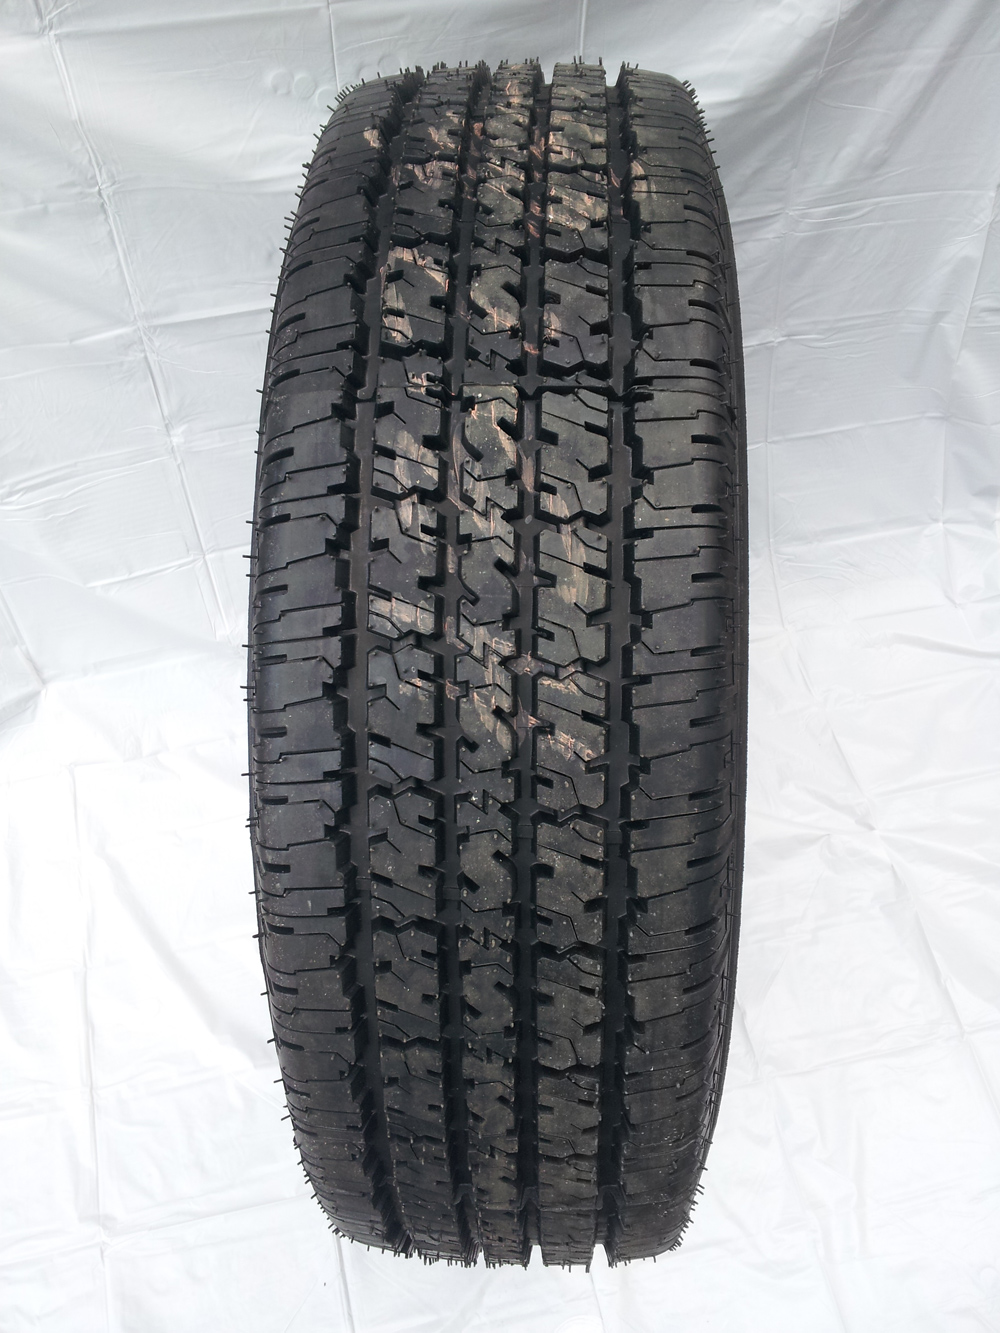 Tire Recappers - LT265/75R16 Retread Proforce Ht